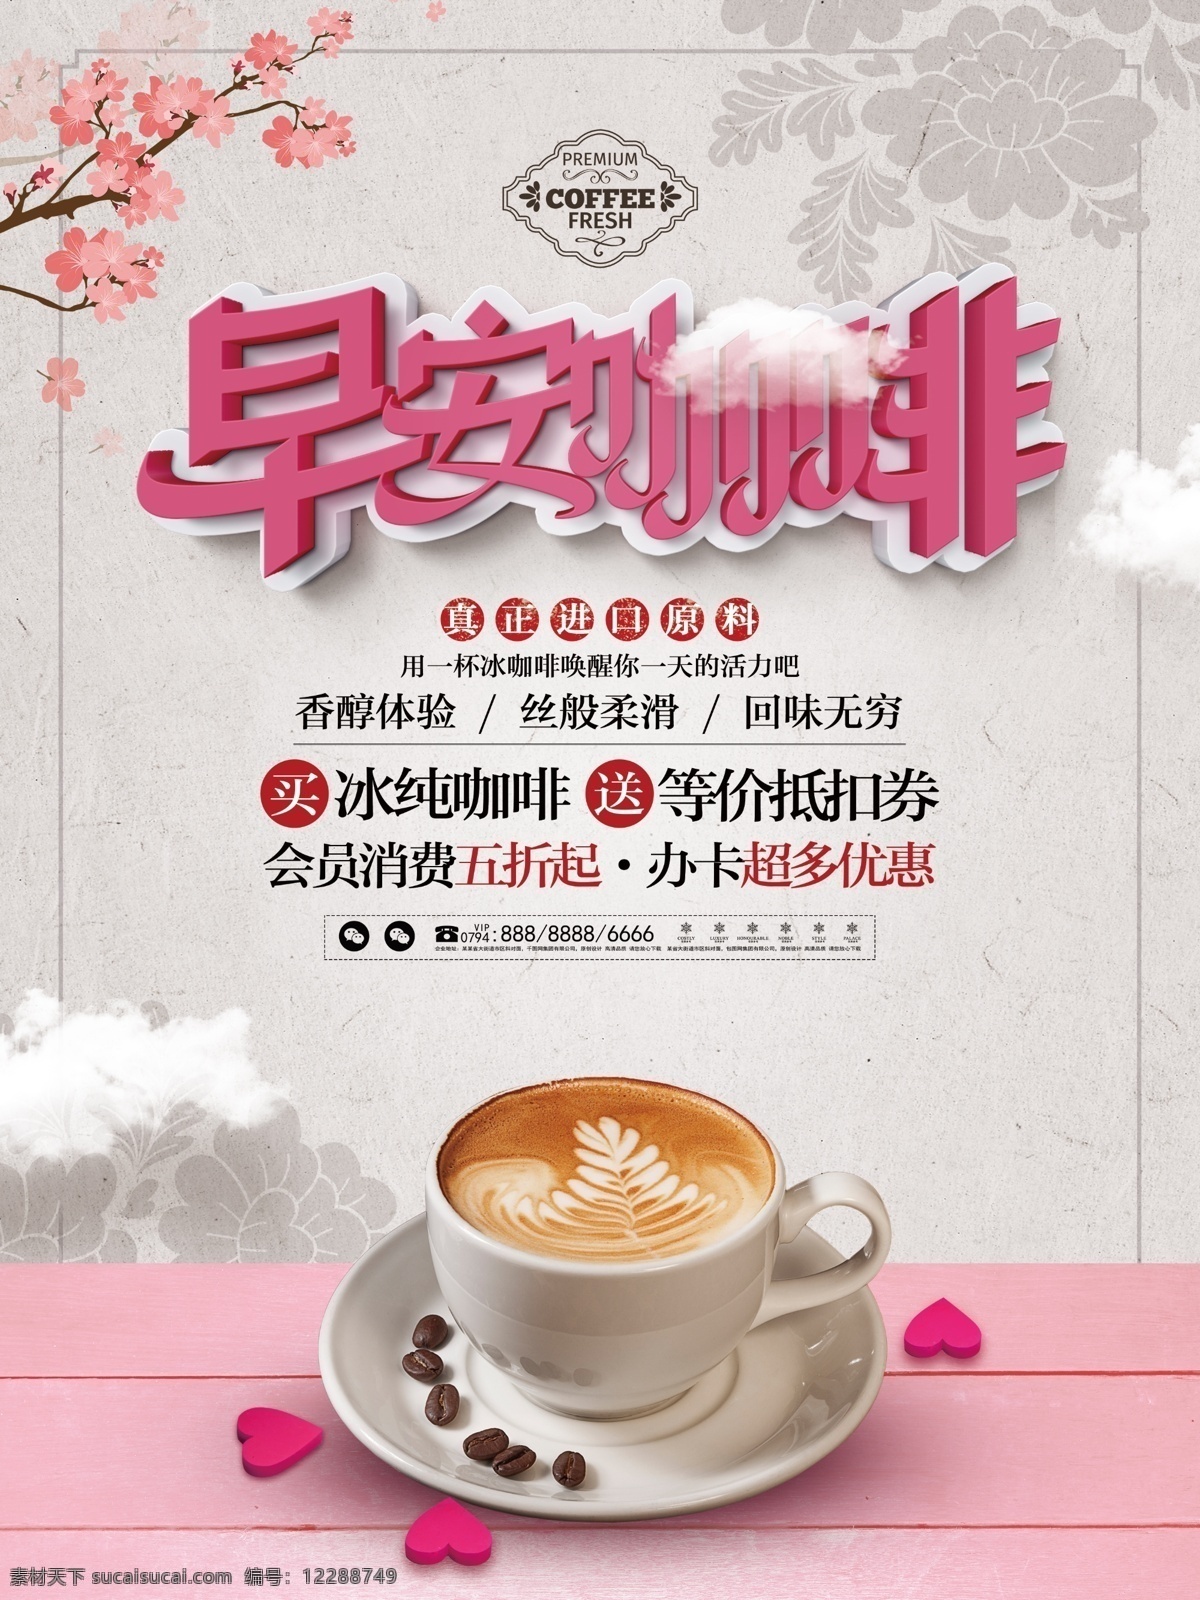 清新 简约 早安 冰 咖啡 美食 饮品 宣传 促销 海报 简介 冷饮 冰咖啡 饮料